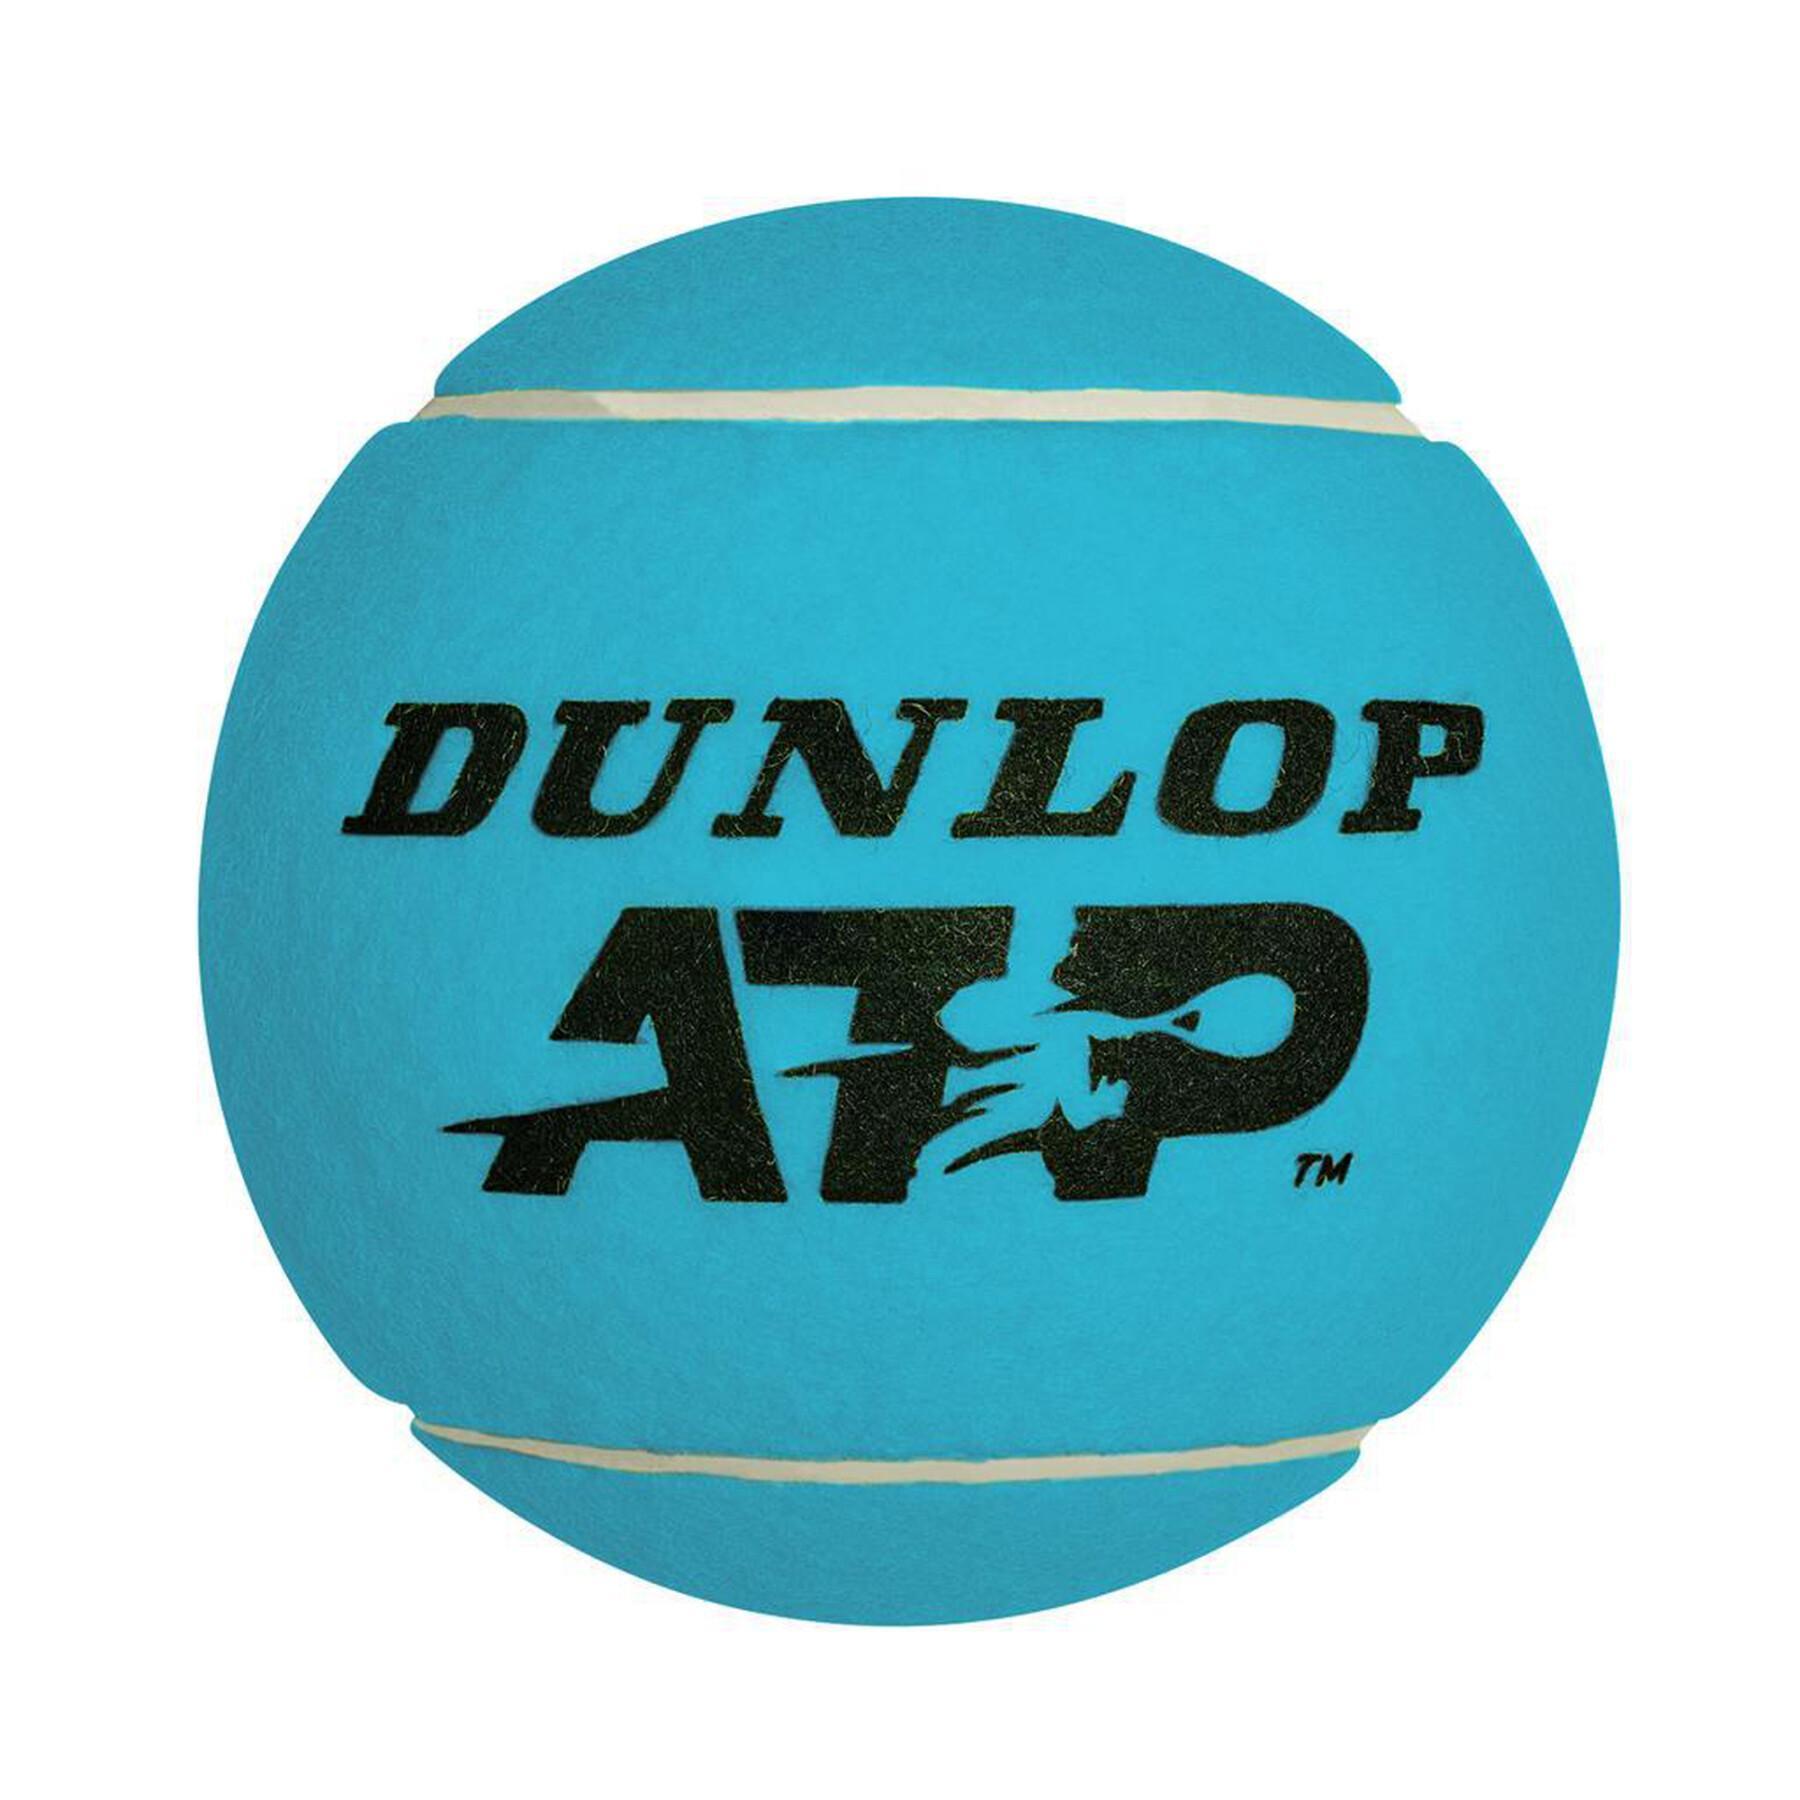 Giant tennis ball Dunlop